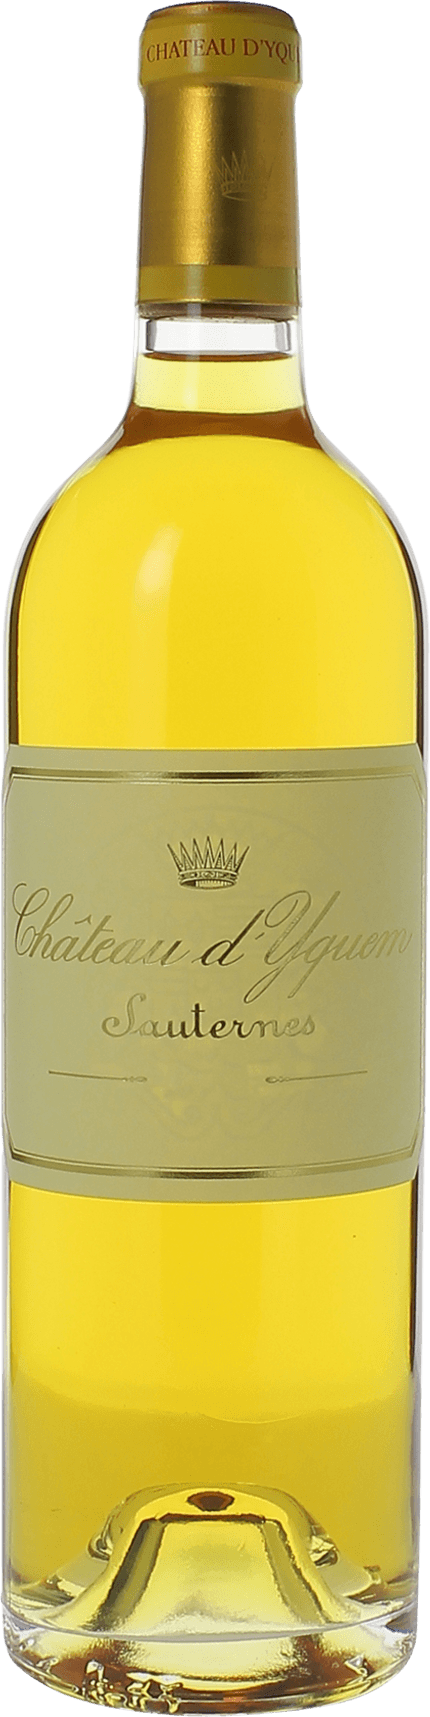 Yquem 1996 1er Cru Suprieur Sauternes, Bordeaux blanc